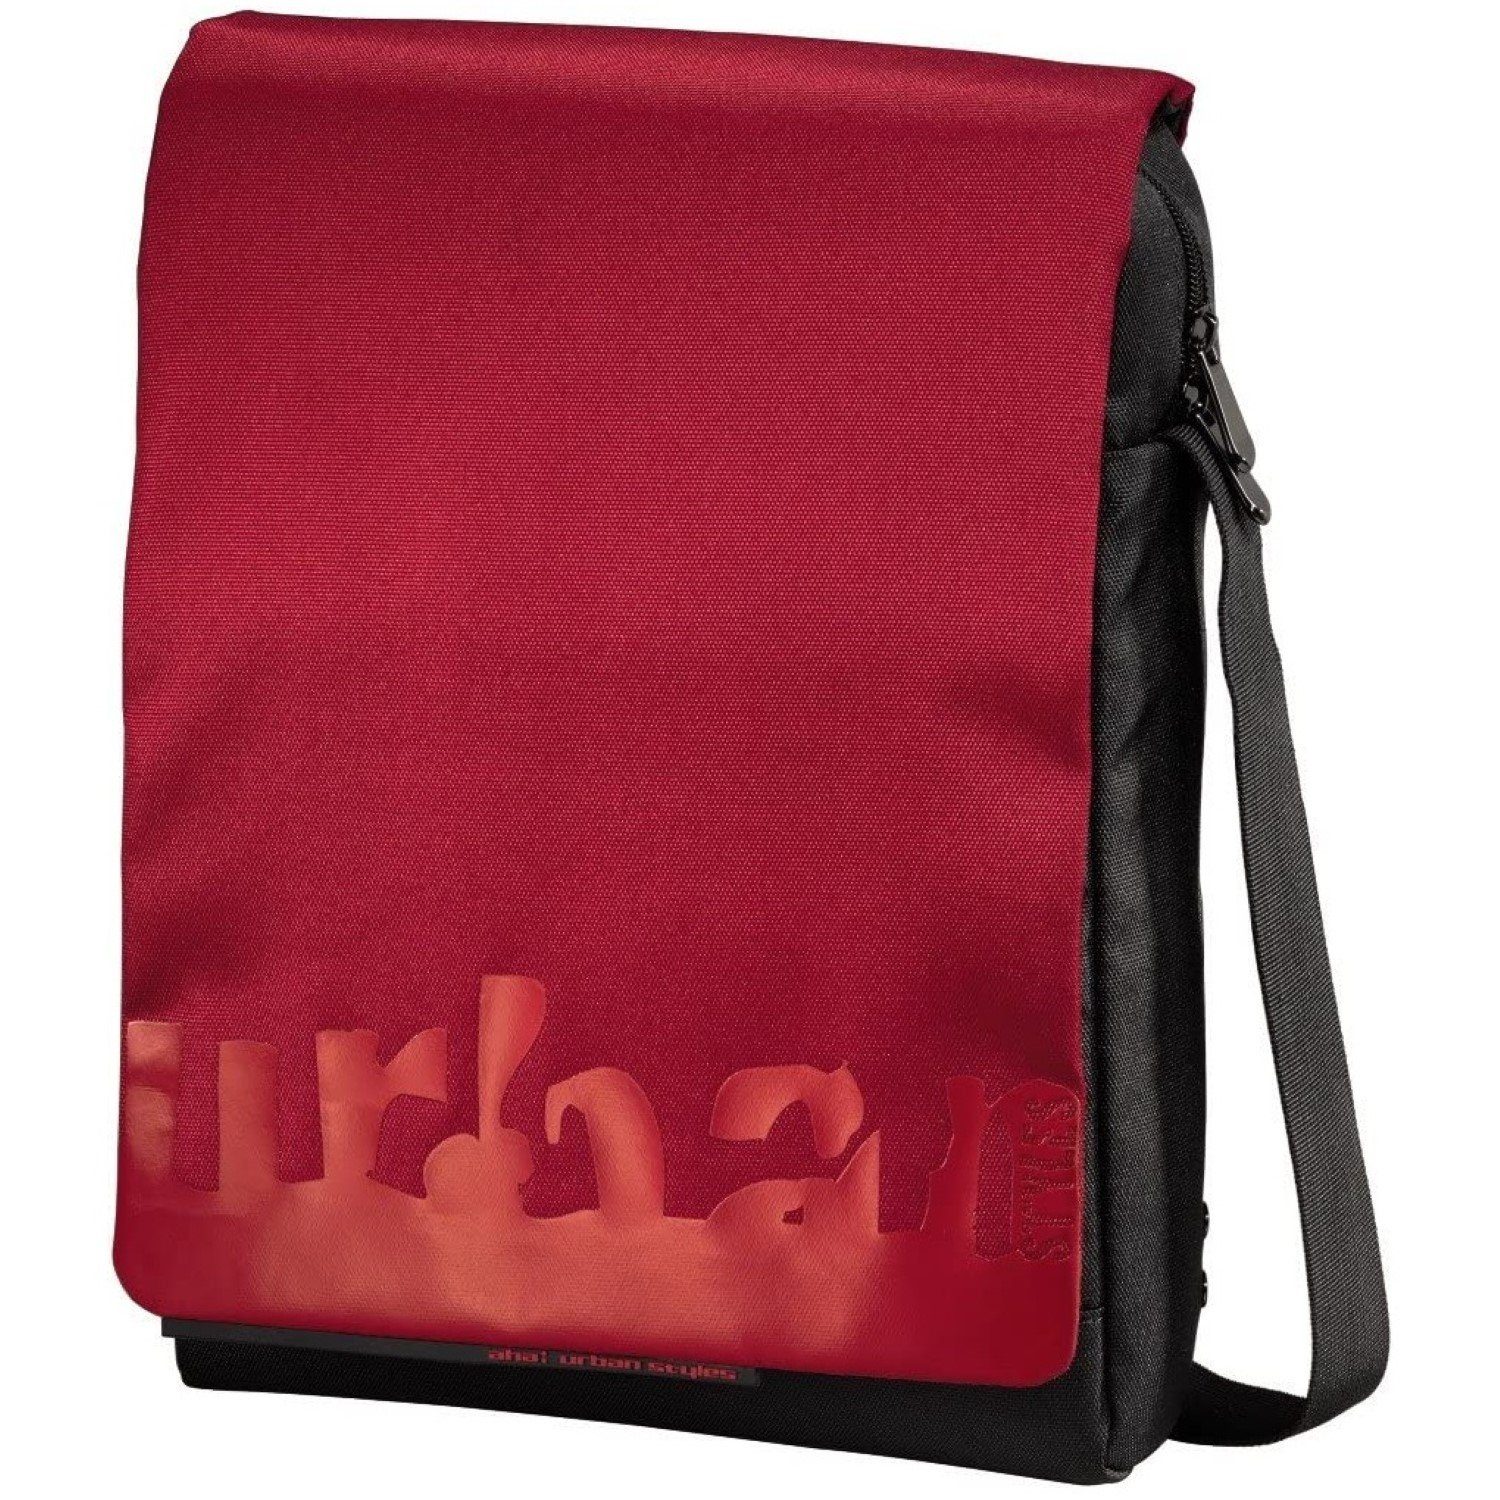 aha Laptoptasche Notebook-Tasche Milla Rot Case Schutz-Hülle, Gepolsterte  Schutz-Hülle, Vordertasche, verstellbarer abnehmbarer Schultergurt,  Notebook-Fach passend für 11" 11,6" 12" 12,1" 12,3" 12,5" 12,9" 13" 13,3"  Zoll Laptop